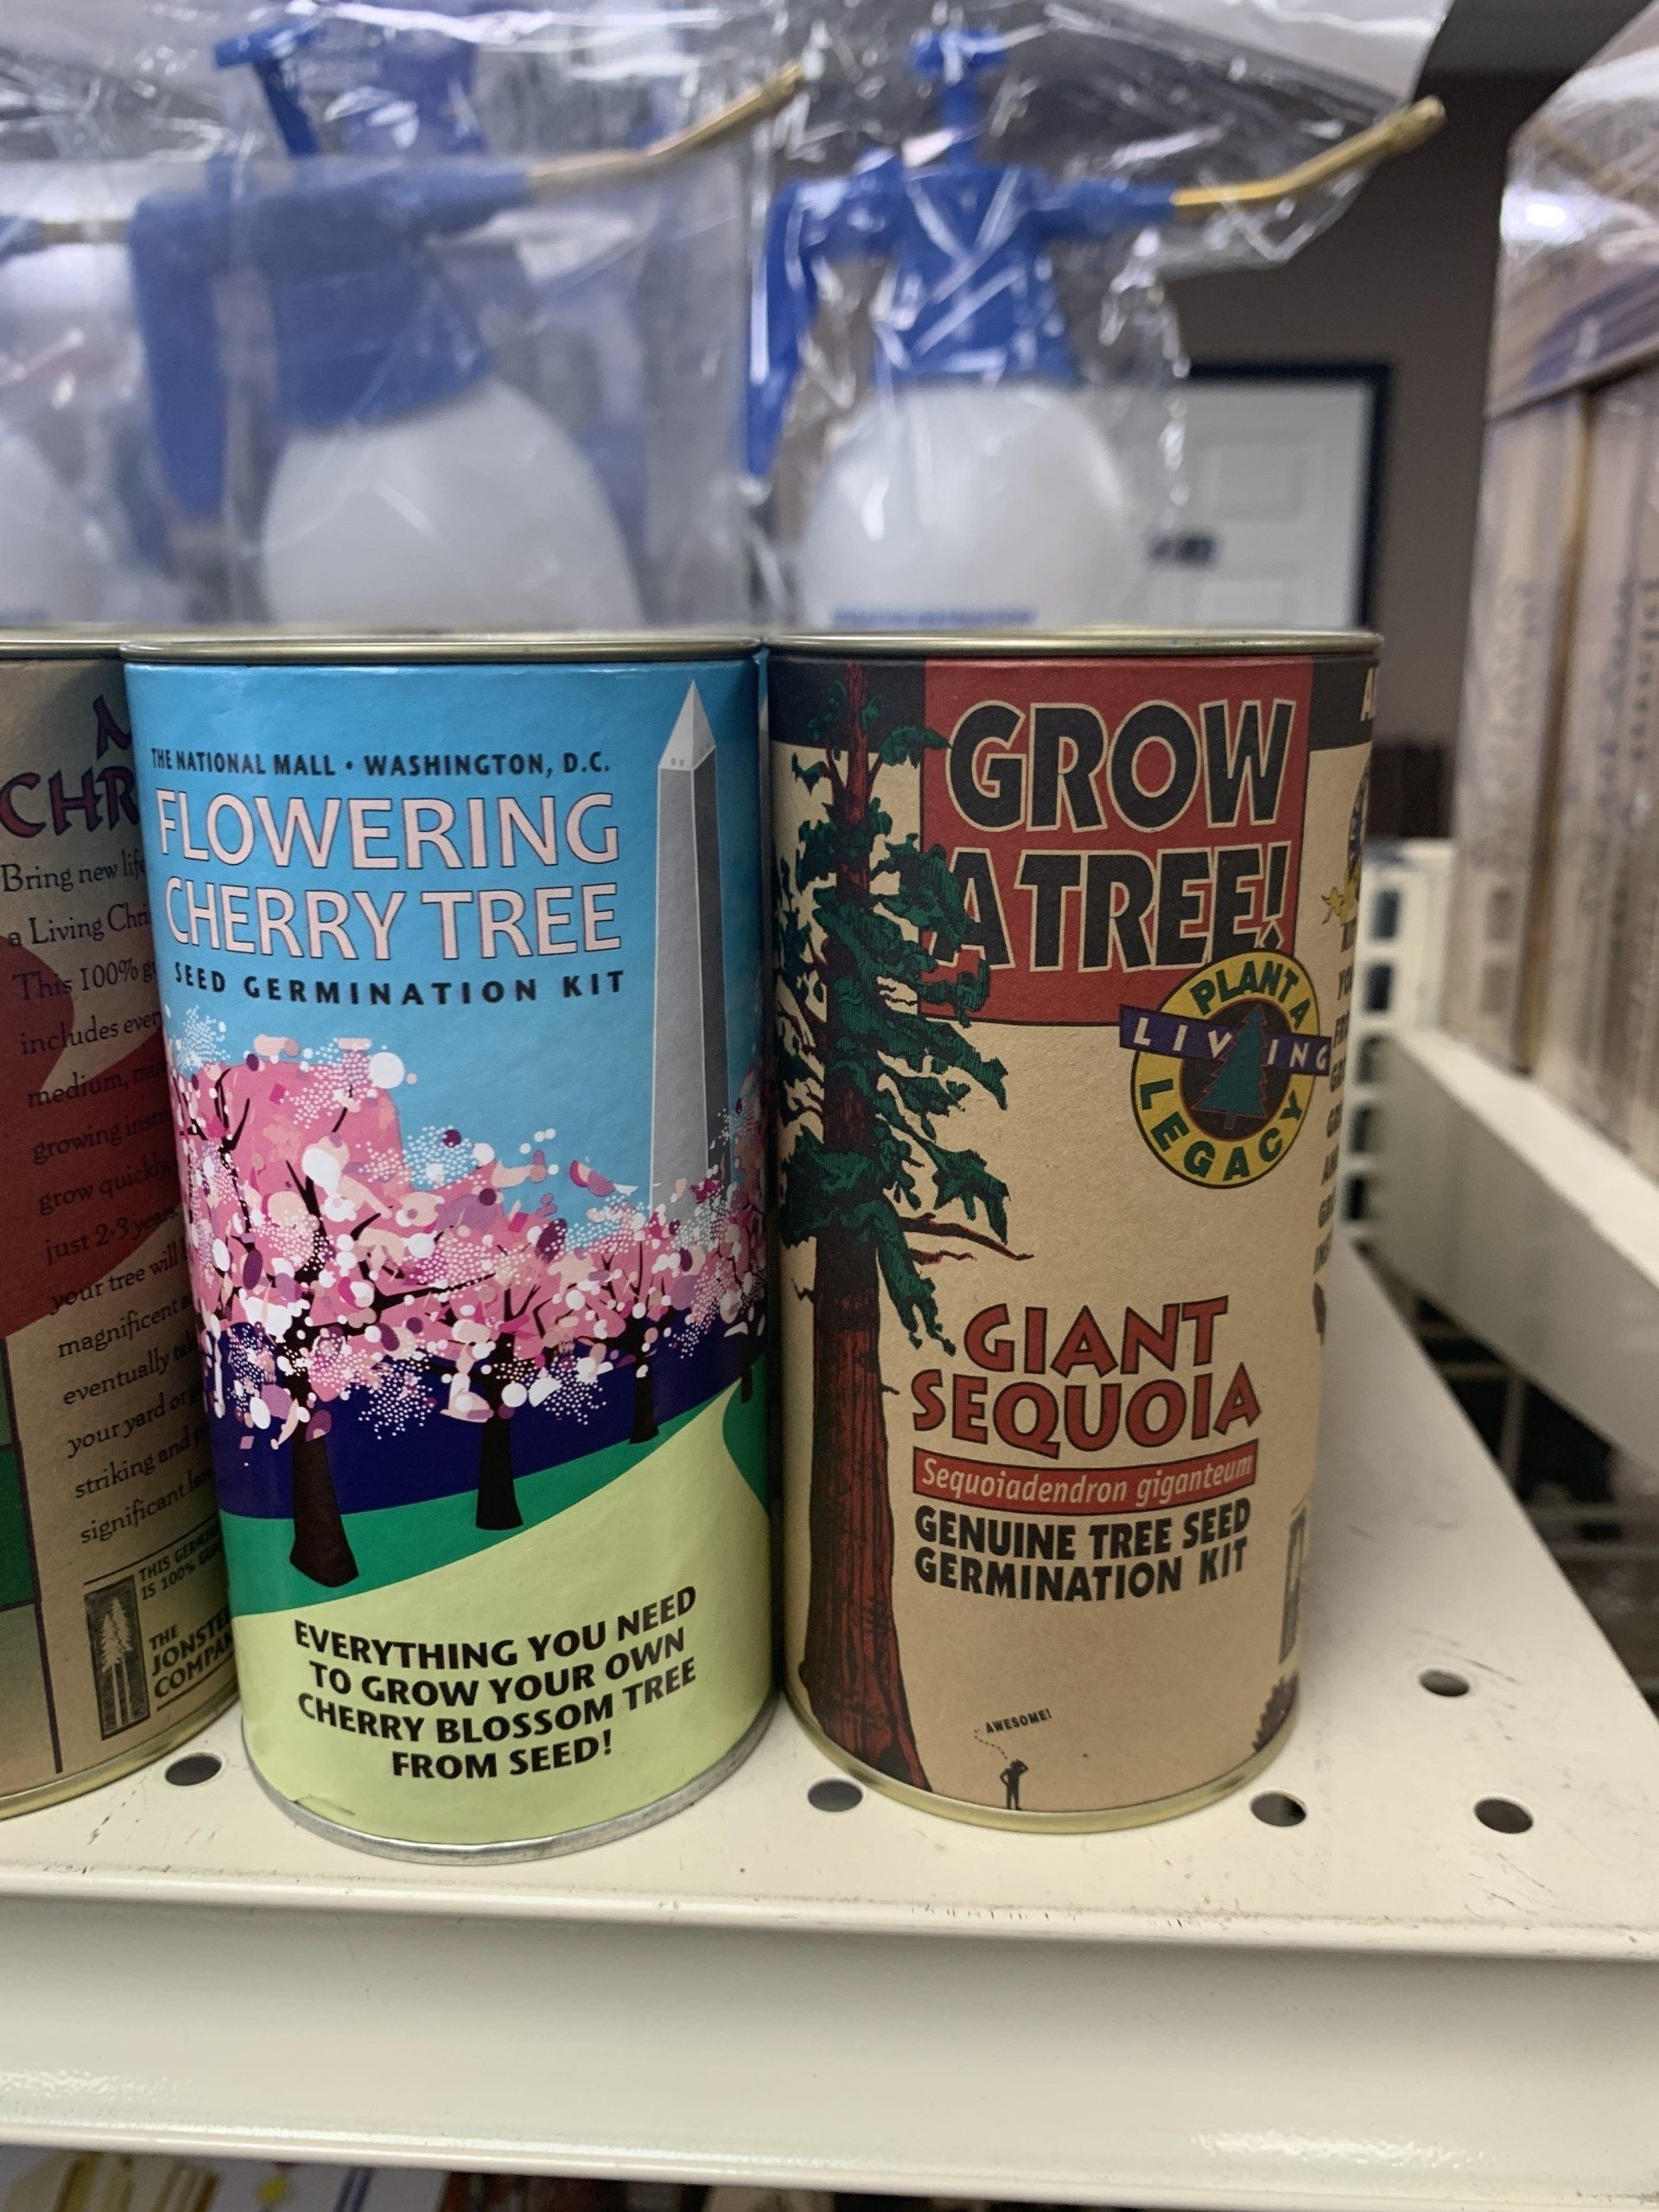 Growatree Giant Sequoia Tree Seed Germination Kit